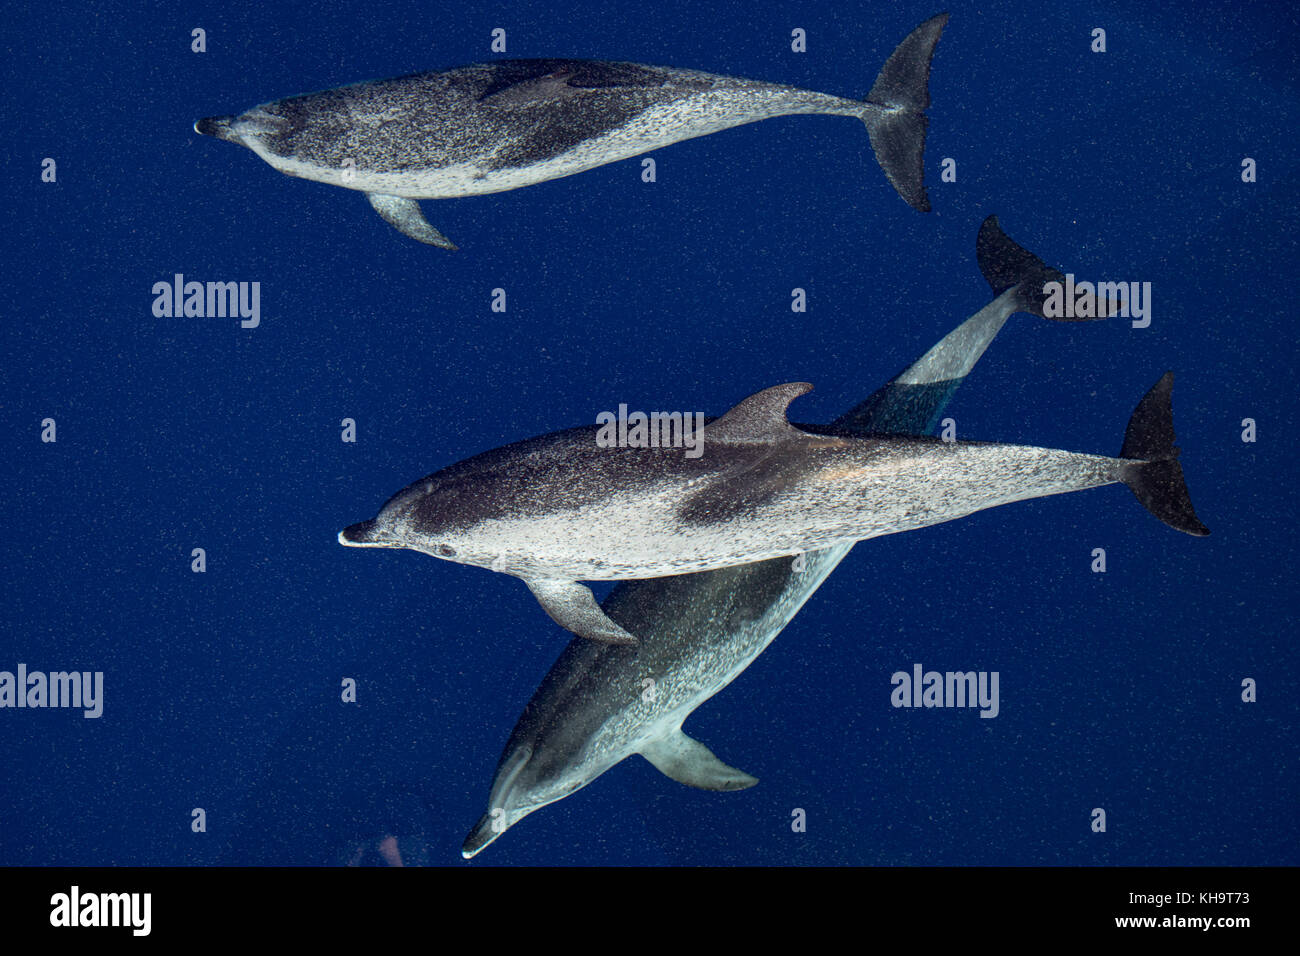 Les dauphins tachetés de l'Atlantique Venez rouler la proue de la National Geographic Orion dans l'eau claire vitreux dans le milieu de l'Océan Atlantique Banque D'Images